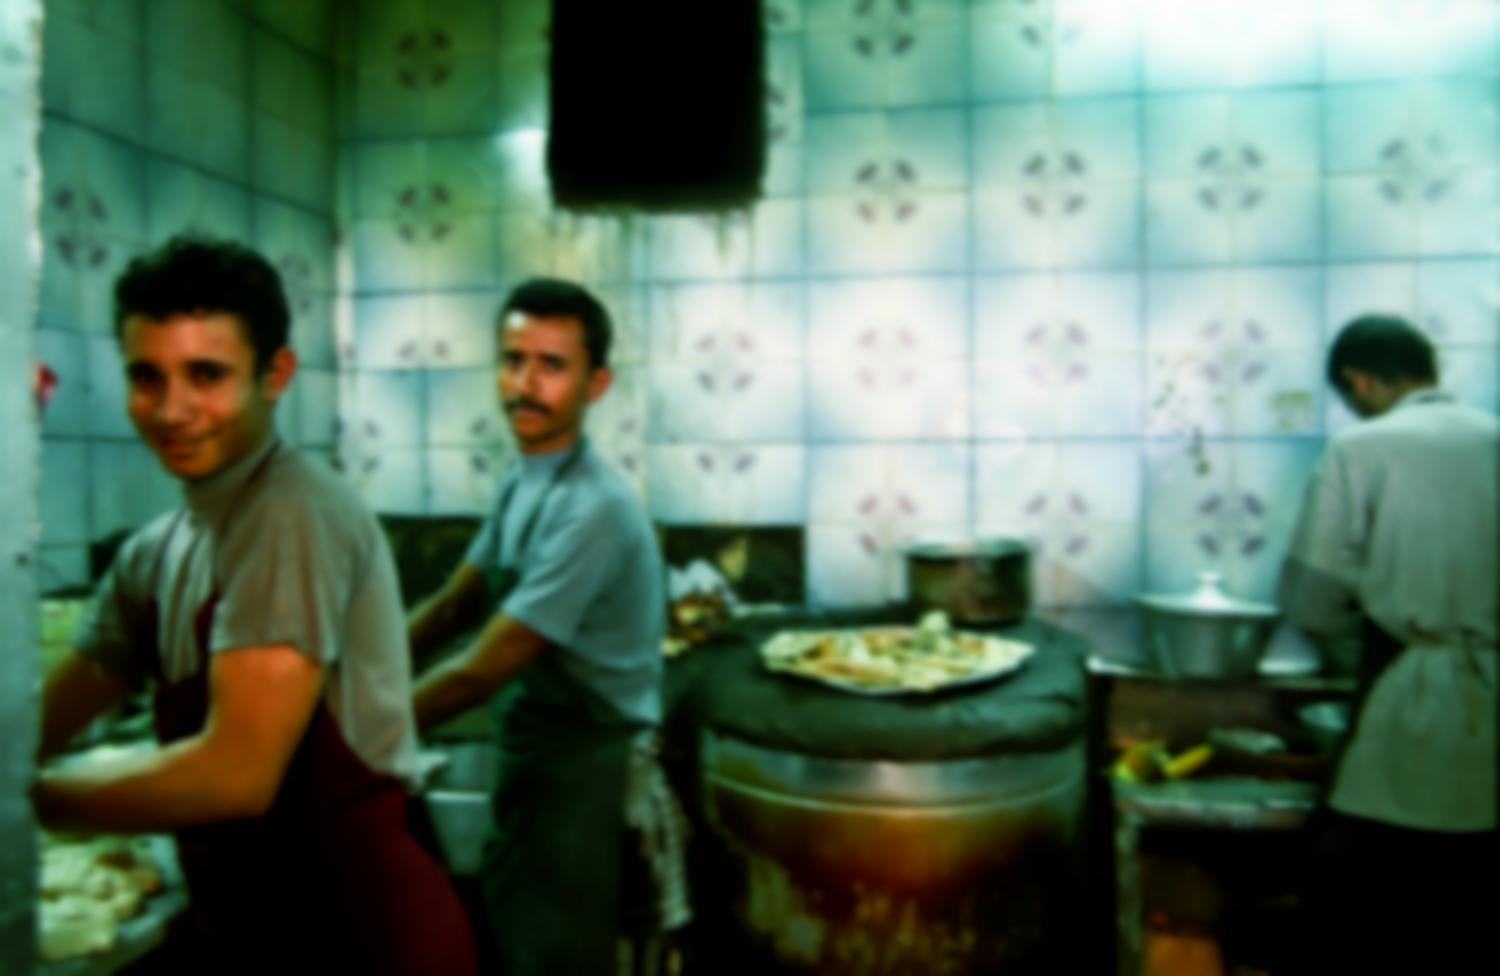 Dans la cuisine d'un restaurant aux murs carrelés de vert, deux hommes en tabliers travaillent de la pâte à pain. Sanaa, Yémen, janvier 2005.